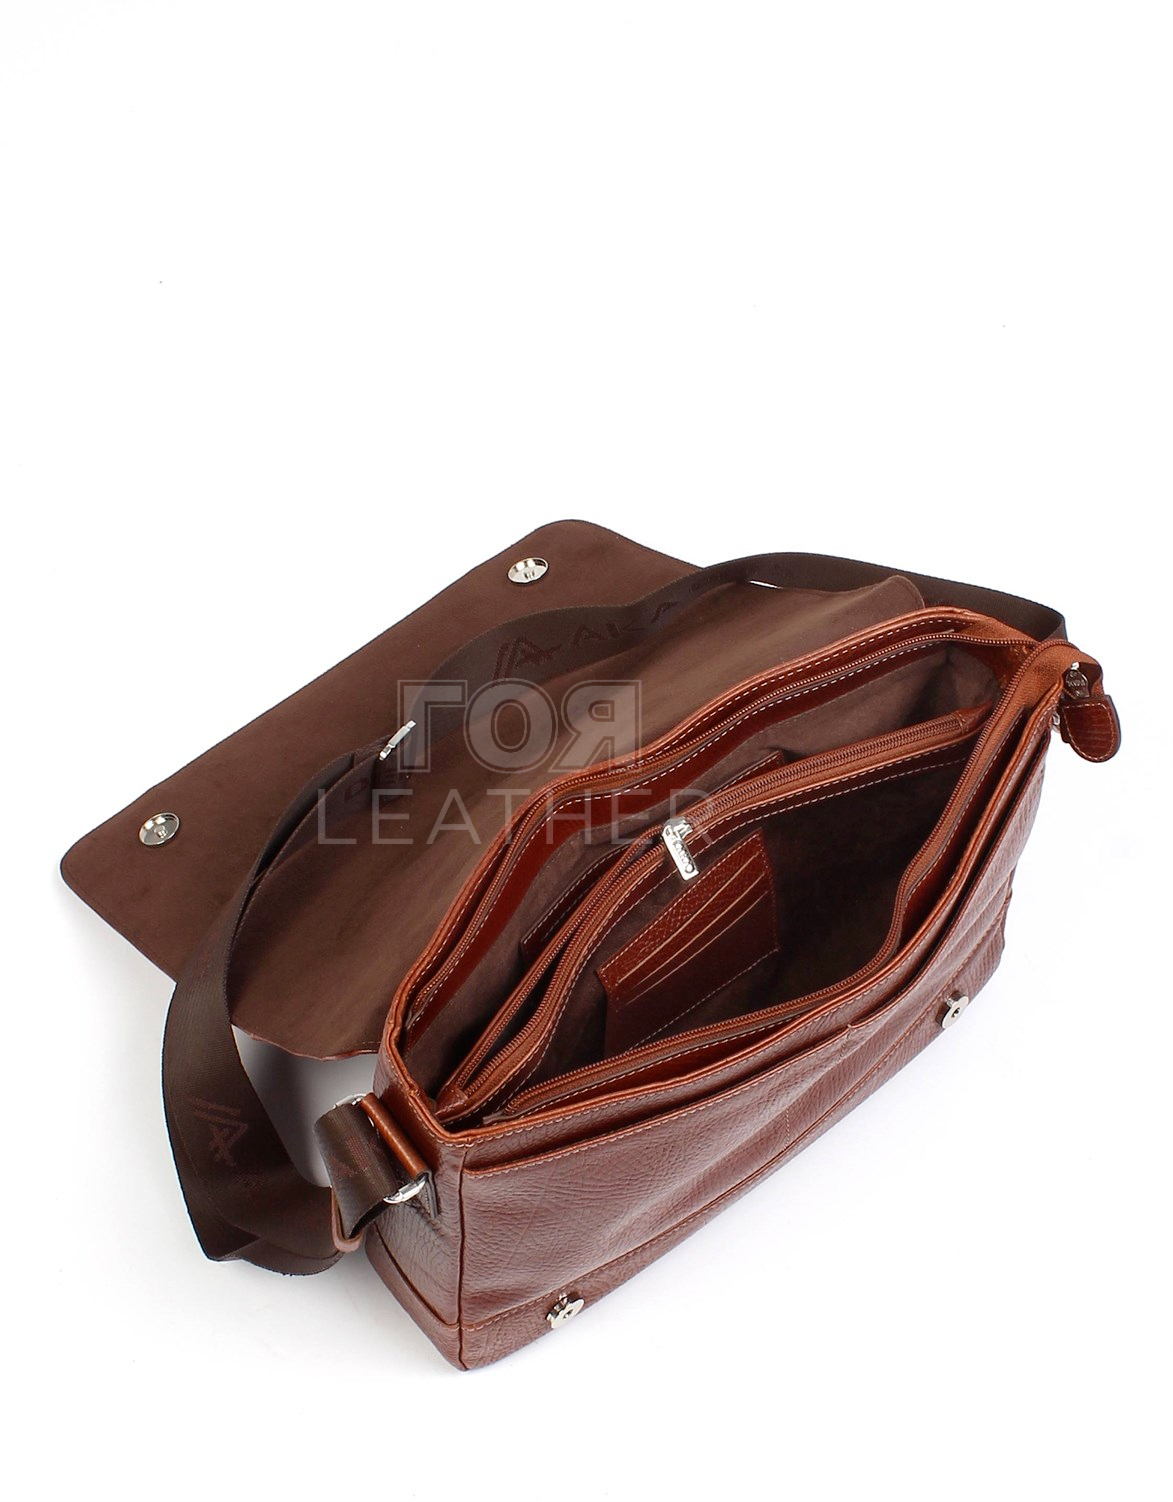 Мъжка кожена чанта модел-385 от ГОЯ Leather. 100% естествена телешка кожа. Луксозна чанта от естествена кожа.